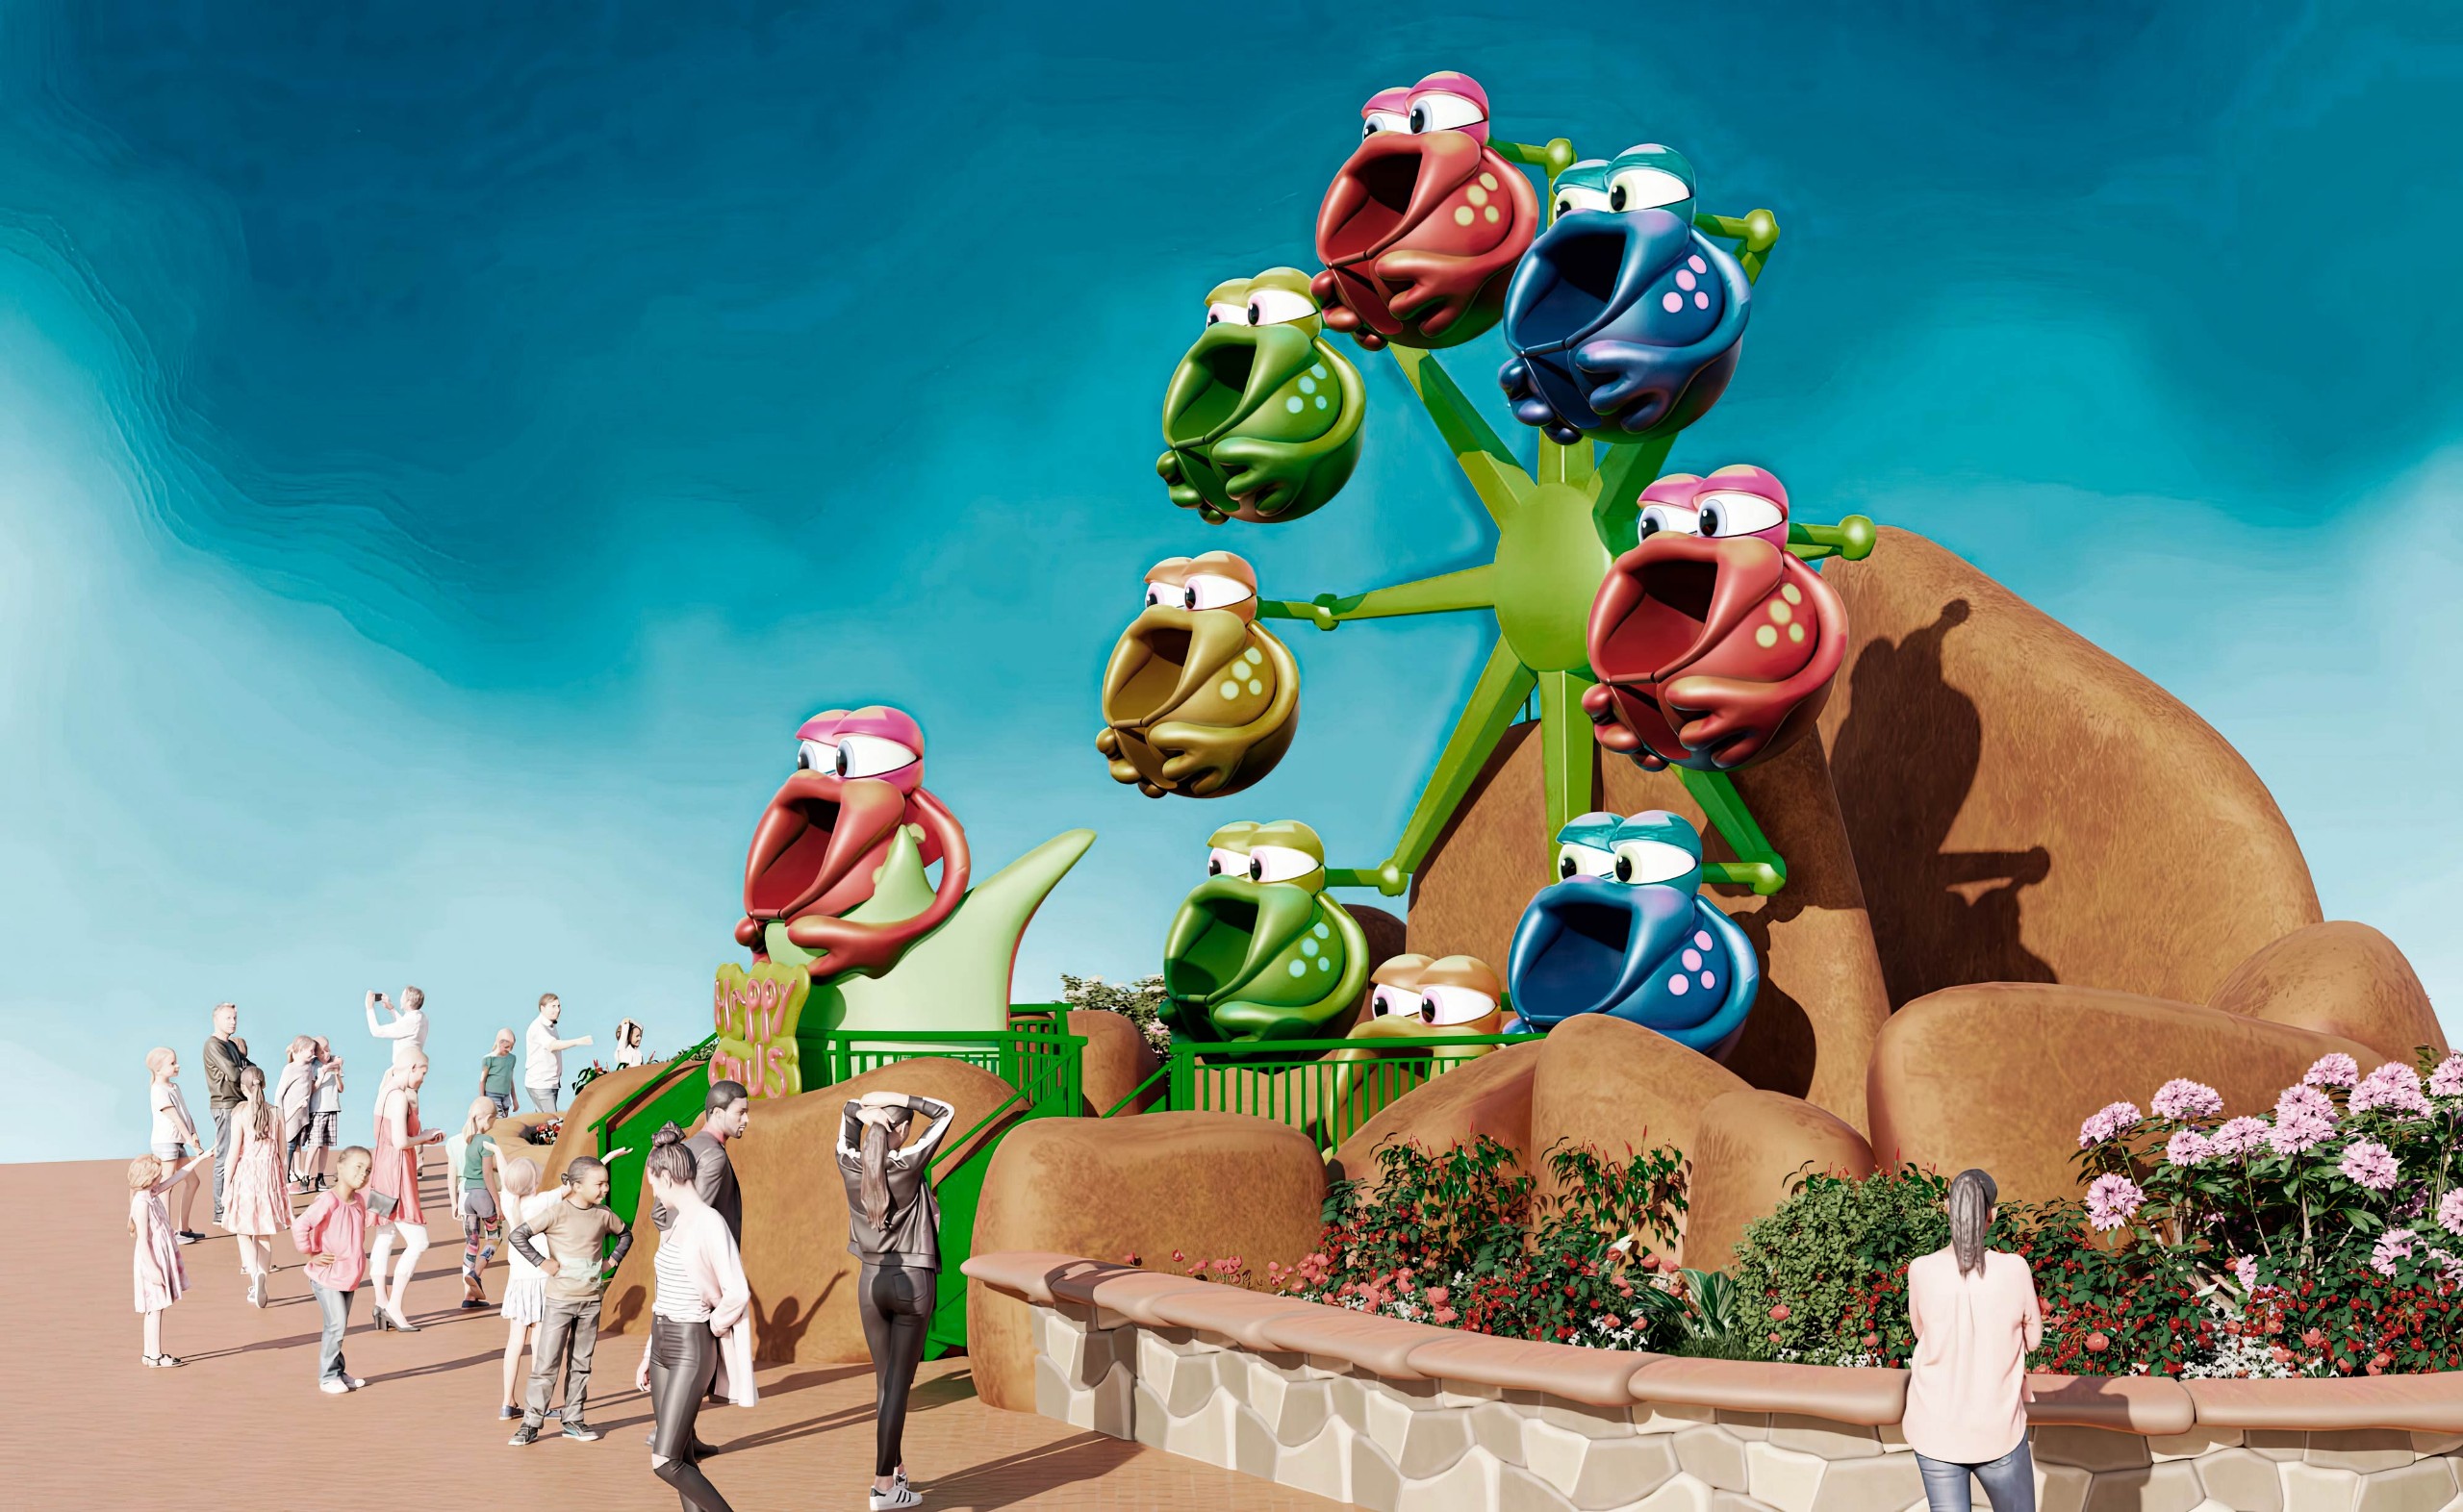 family themed ride for amusement parks, park Amusements